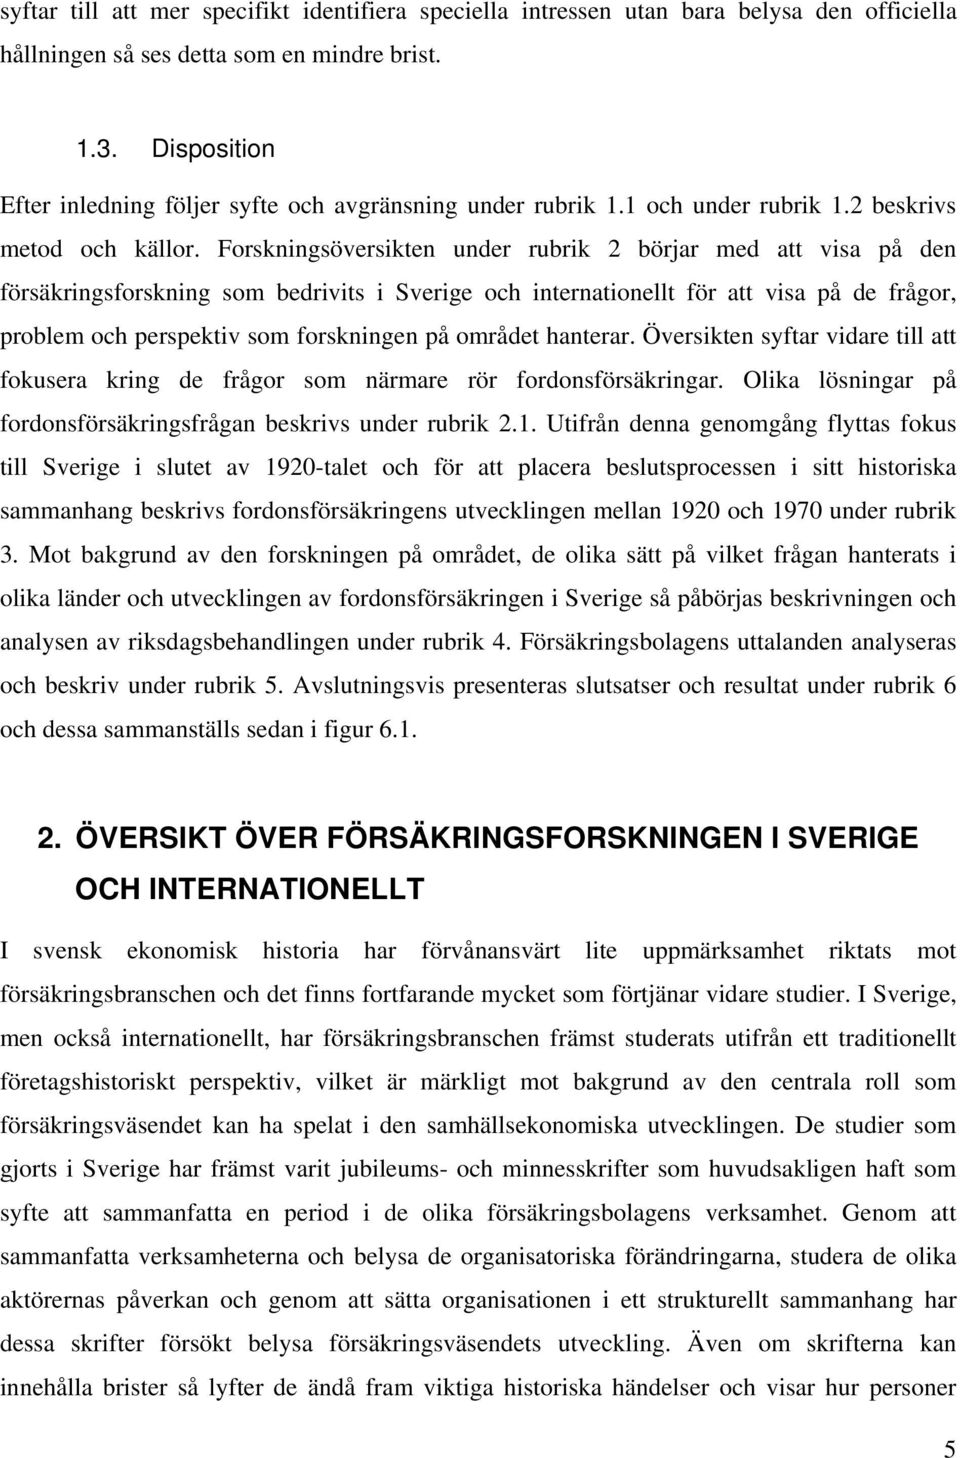 Forskningsöversikten under rubrik 2 börjar med att visa på den försäkringsforskning som bedrivits i Sverige och internationellt för att visa på de frågor, problem och perspektiv som forskningen på